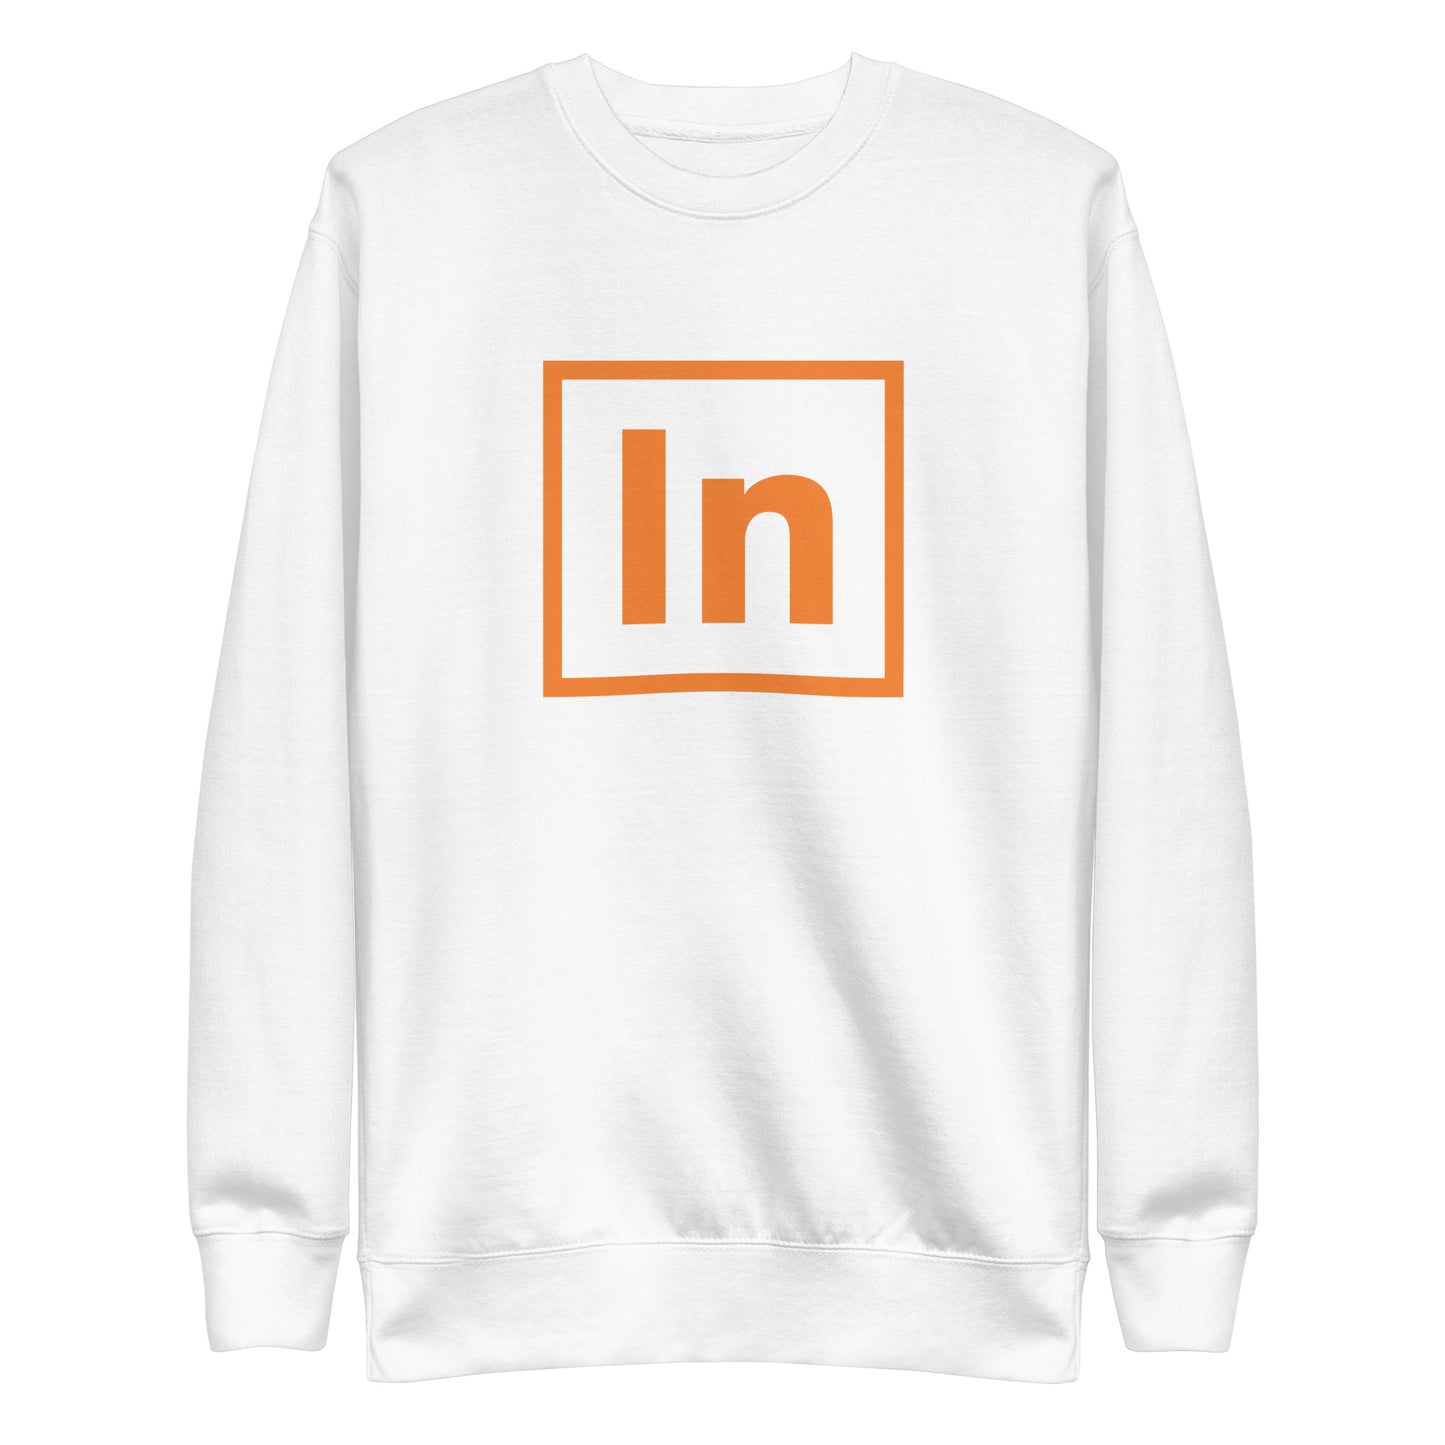 Unisex Premium Sweatshirt (fitted cut) - "In"